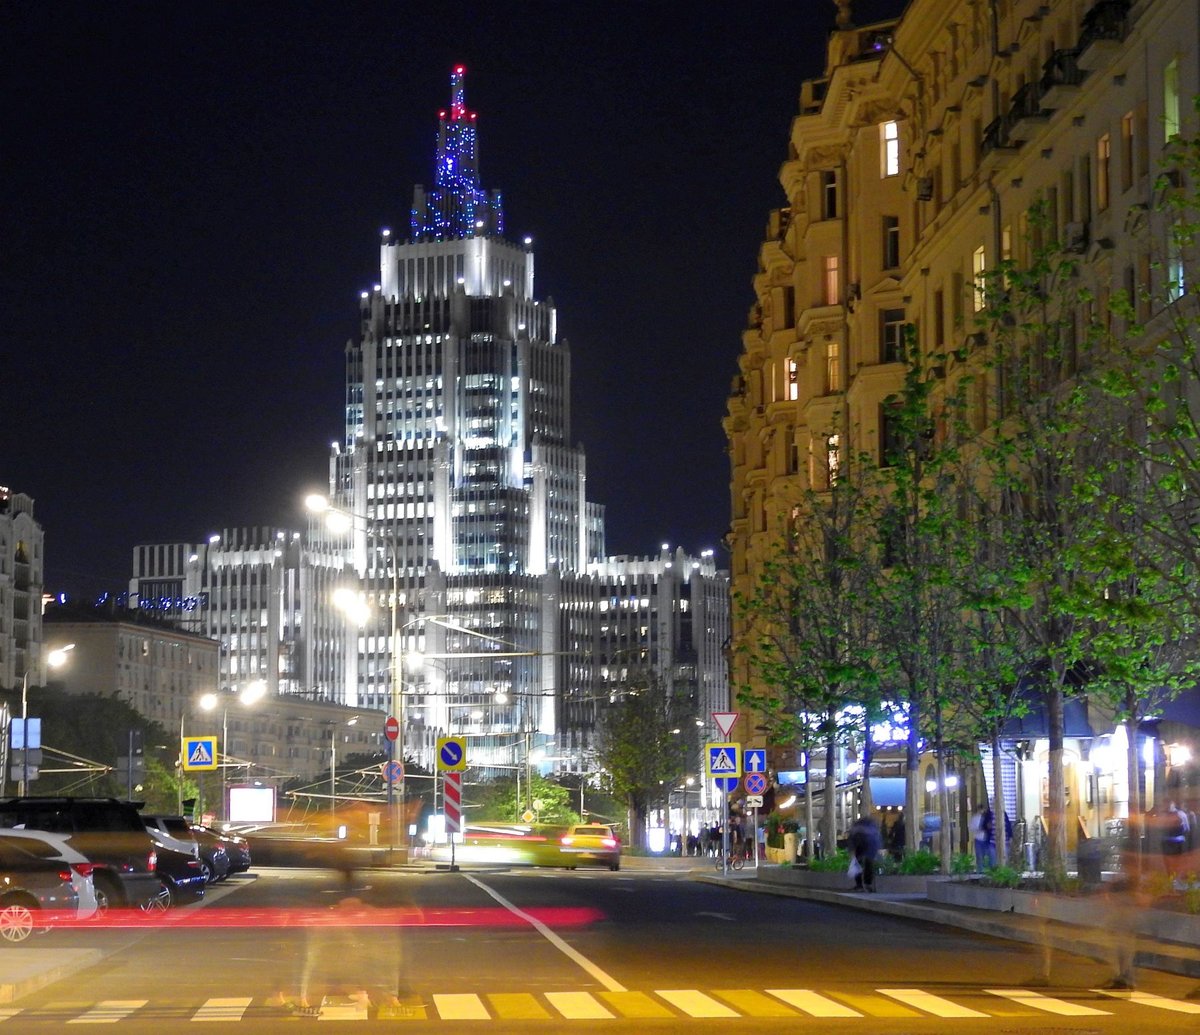 Blick am Abend des 12.05.2018, von der Twerskaja Ulitza in der Nähe der Tschaikowski Concept Hall, in Richtung Nordost. Das abgebildete Gebäude müsste die Bank of Moscow sein.